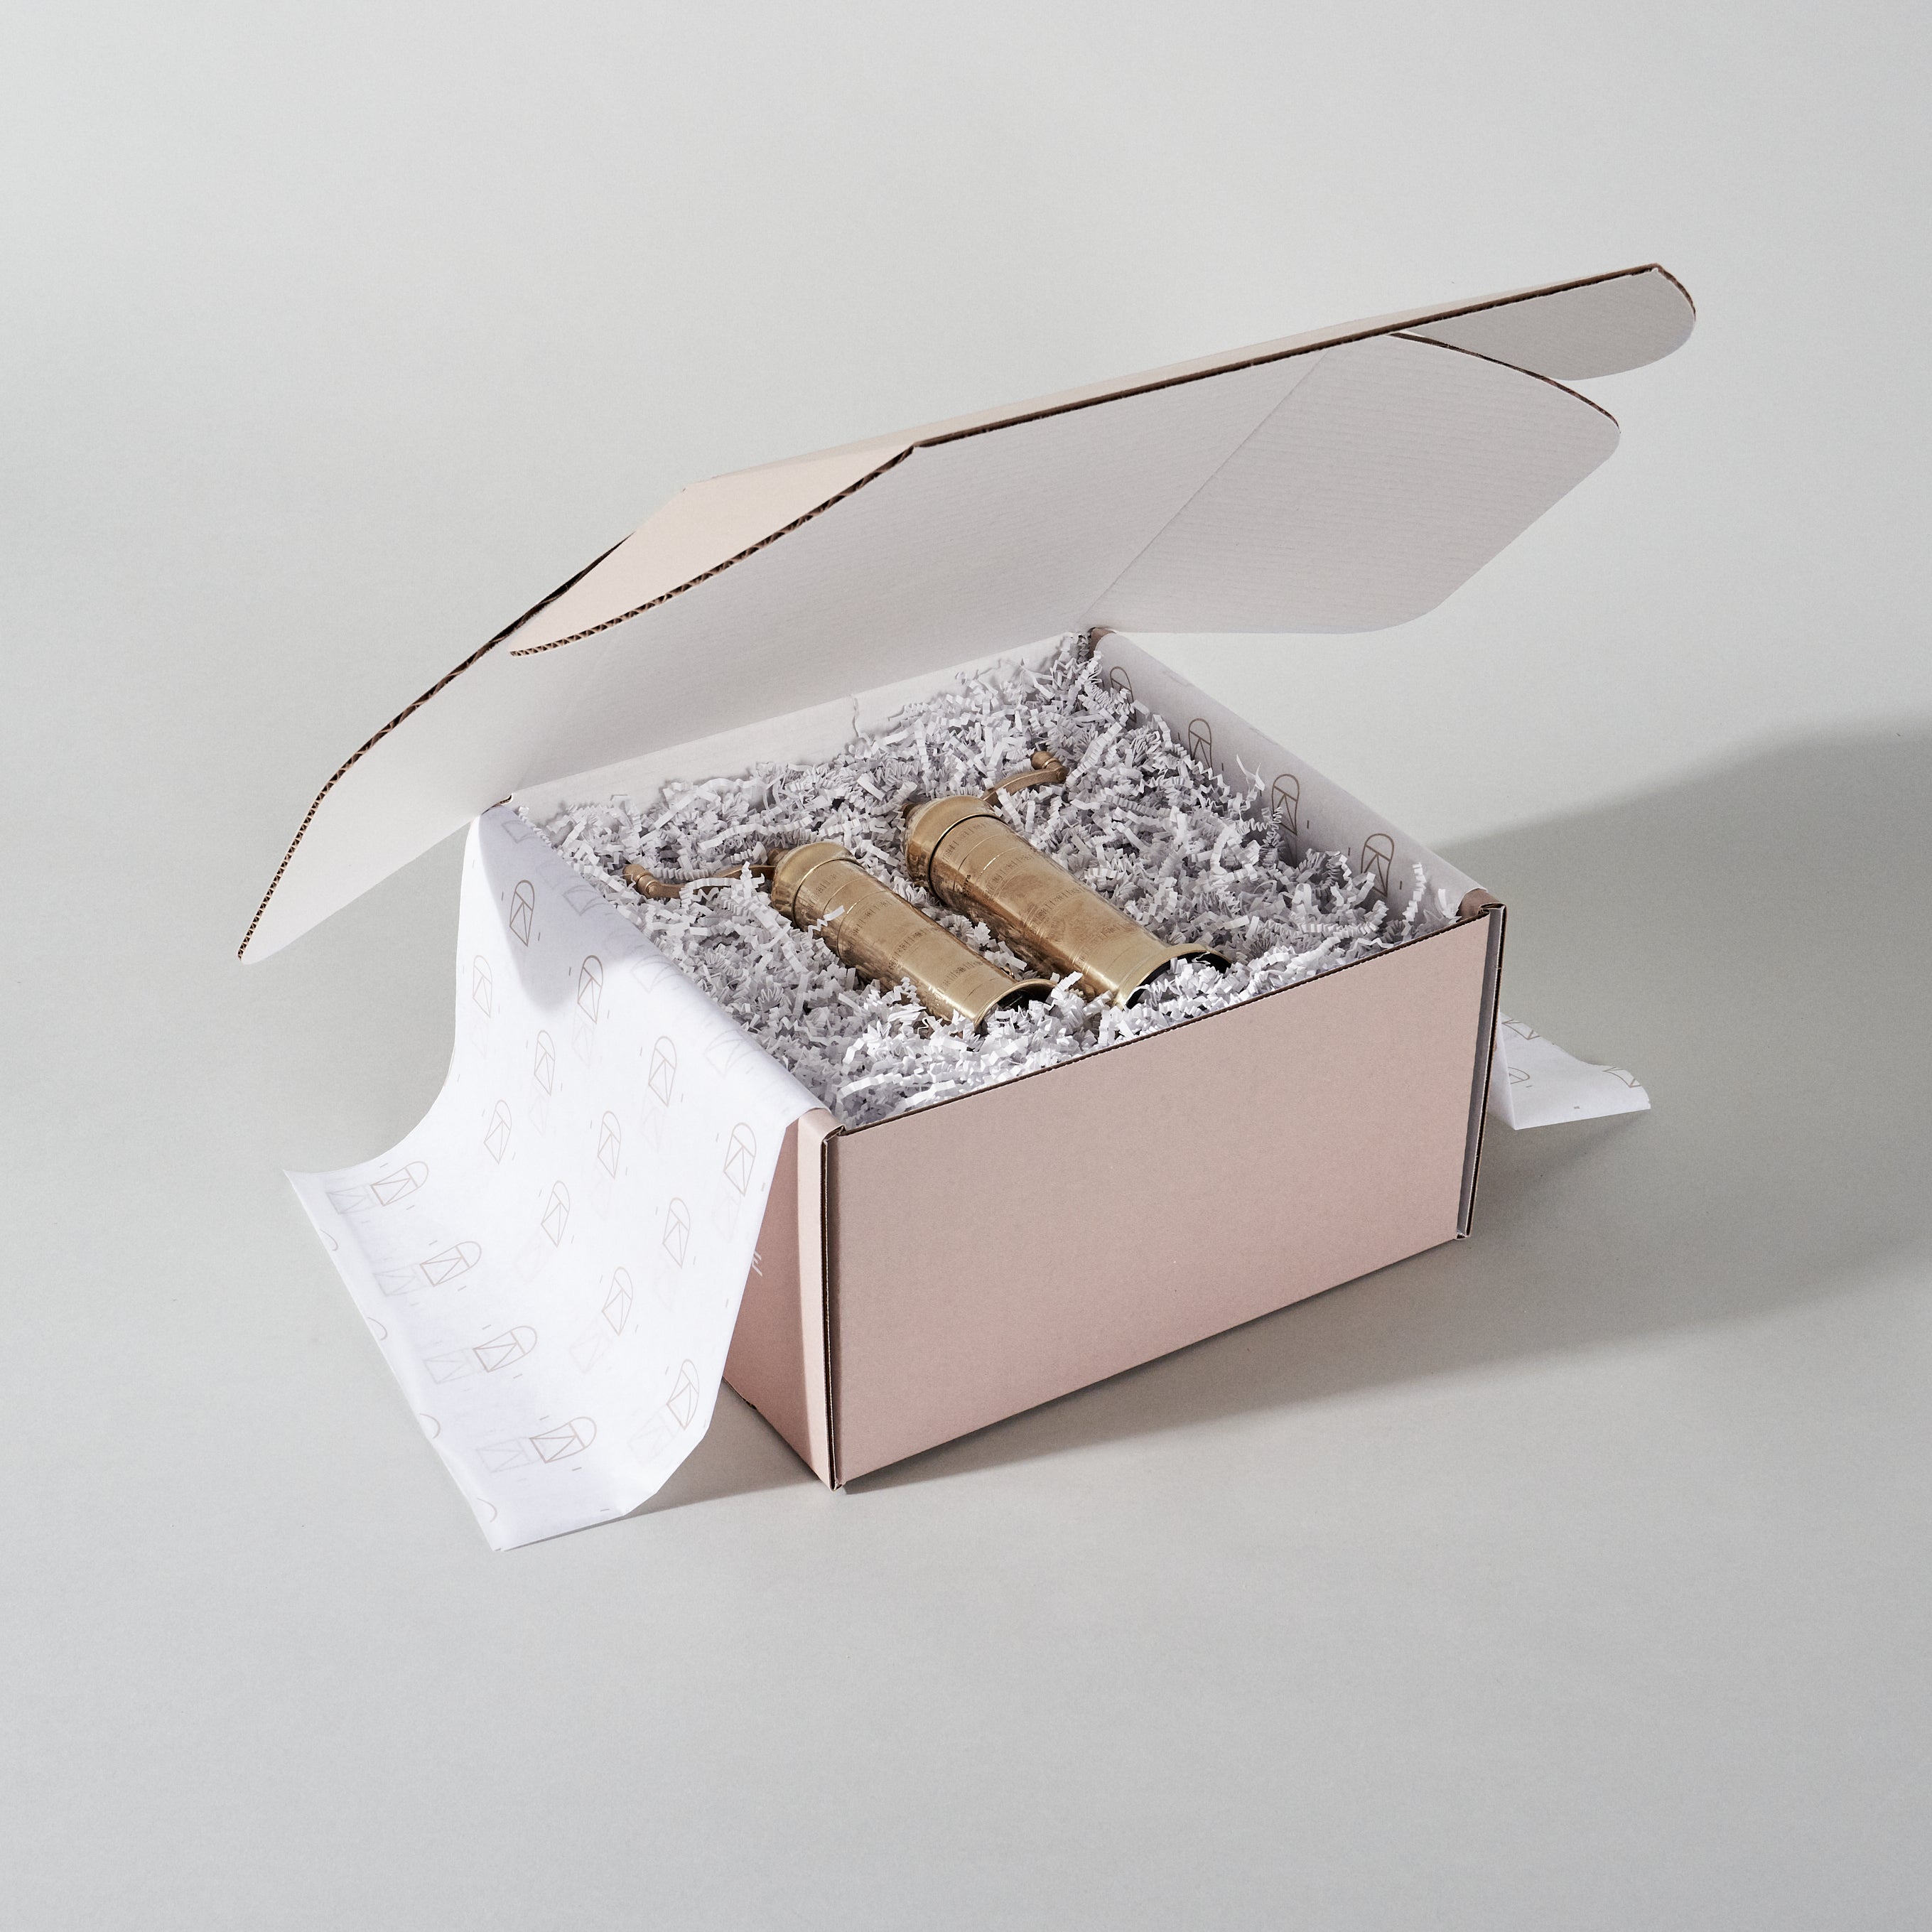 "Artisanal Brass Salt & Pepper Mill" KMH Gift Box